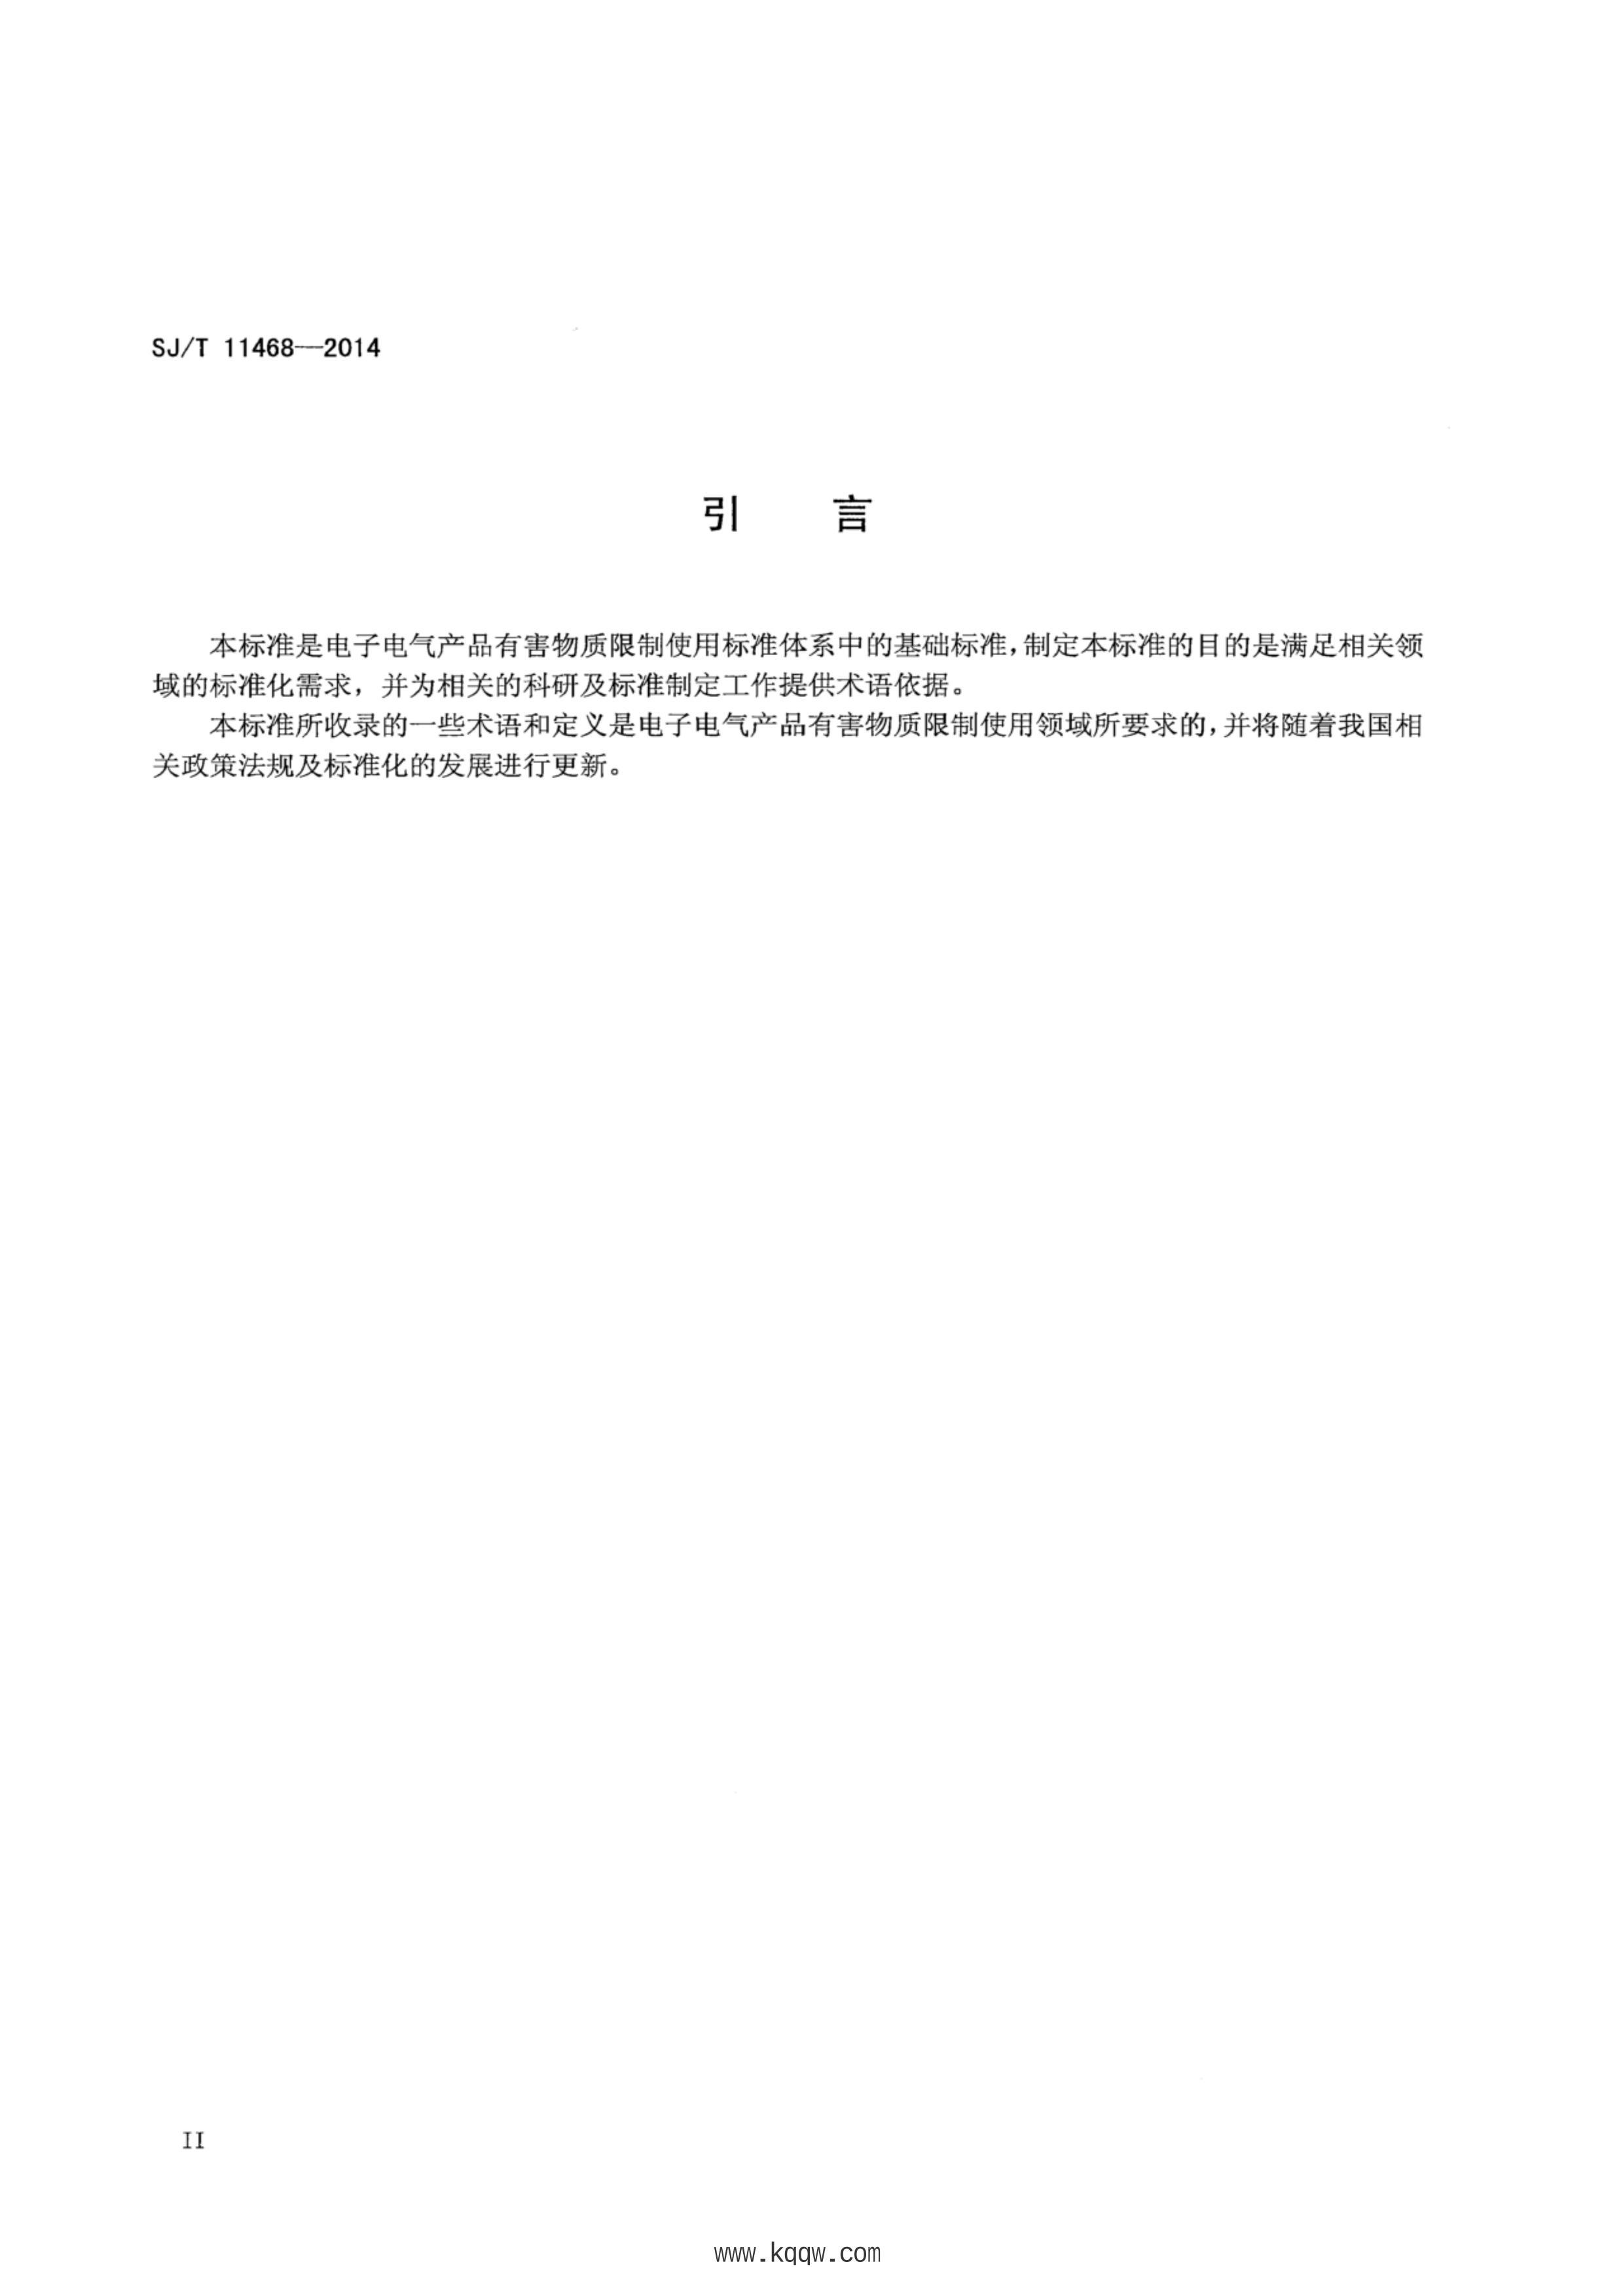 SJT 11468-2014 ӵƷкʹ .pdf3ҳ